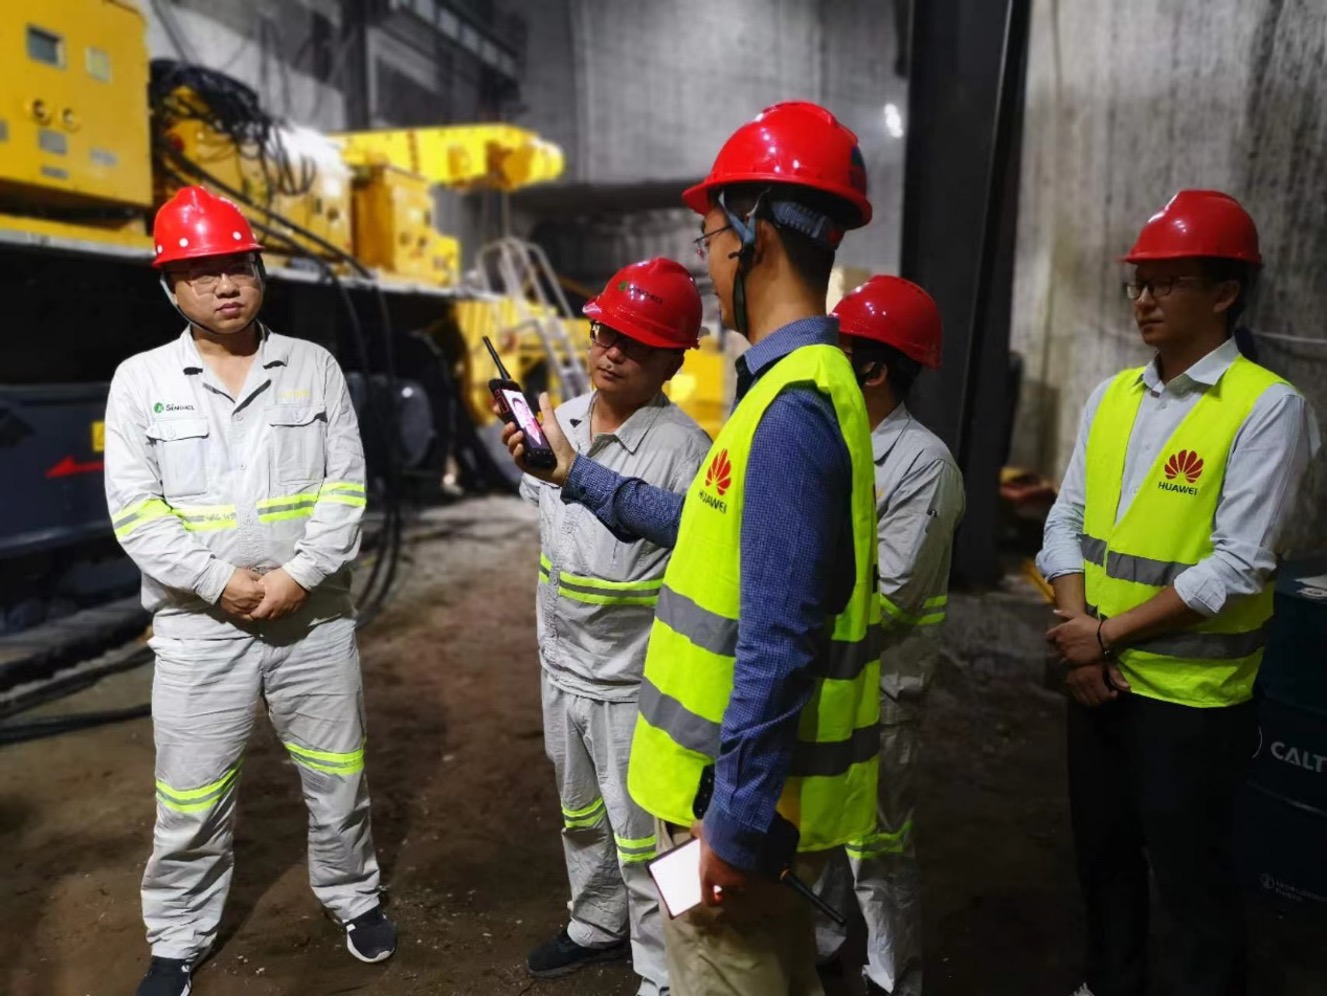 Hình ảnh hoạt động của đội Đội ngũ Khai khoáng của Huawei tại mỏ khai khoáng thông minh Asia Potash Huawei hỗ trợ xây dựng mỏ kali thông minh đầu tiên của ASEAN tại Lào